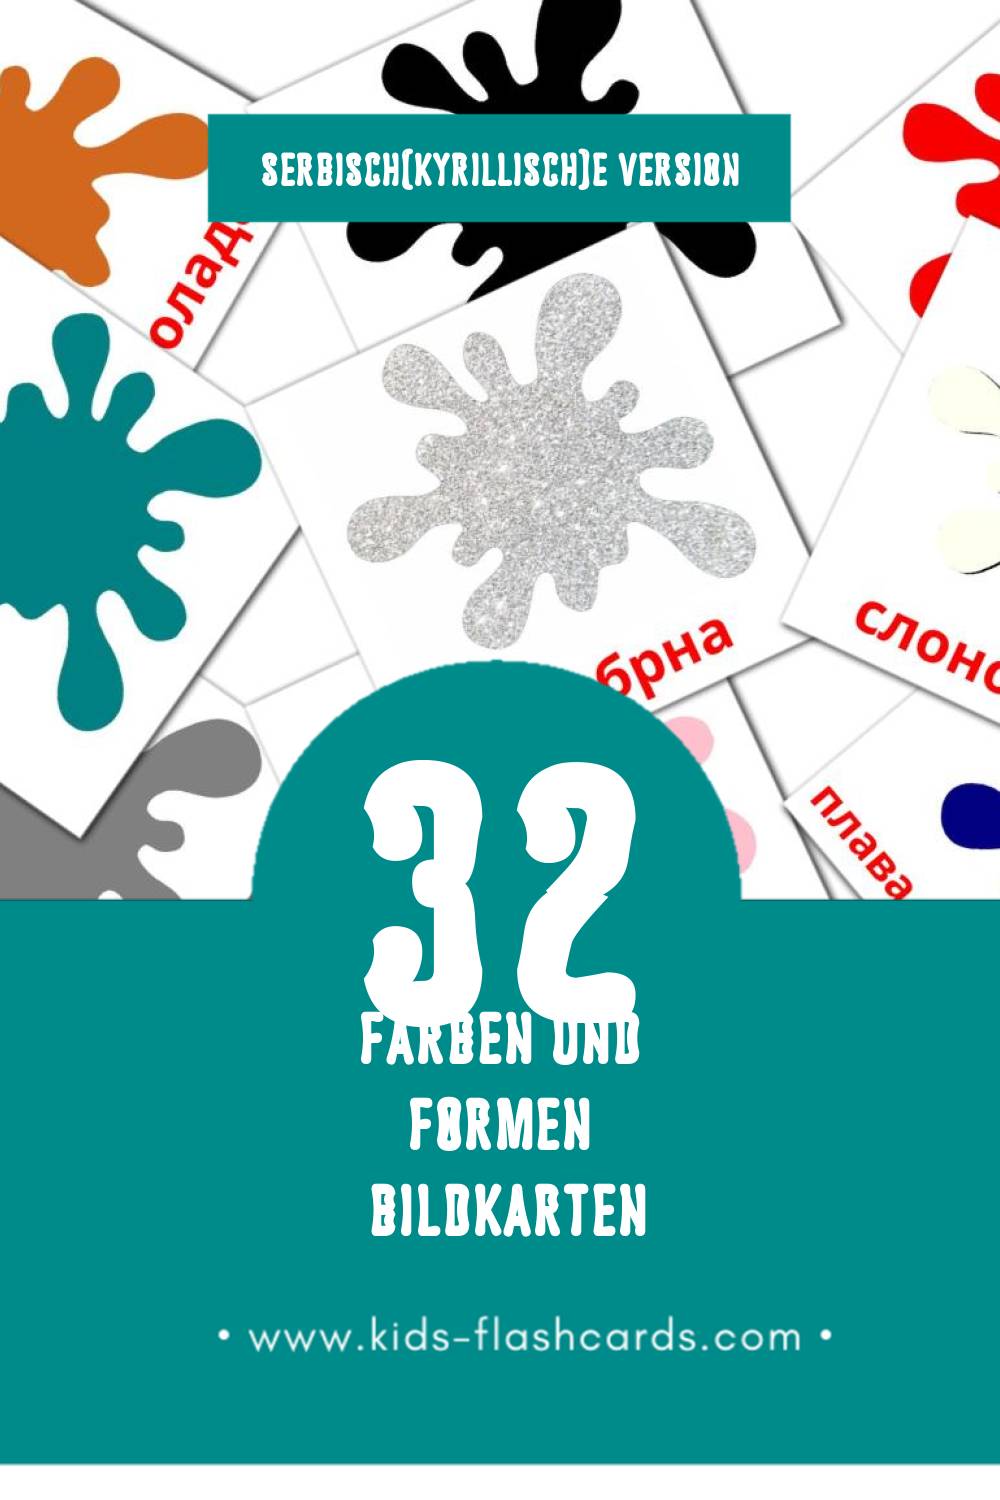 Visual Боје и облици Flashcards für Kleinkinder (12 Karten in Serbisch(kyrillisch))